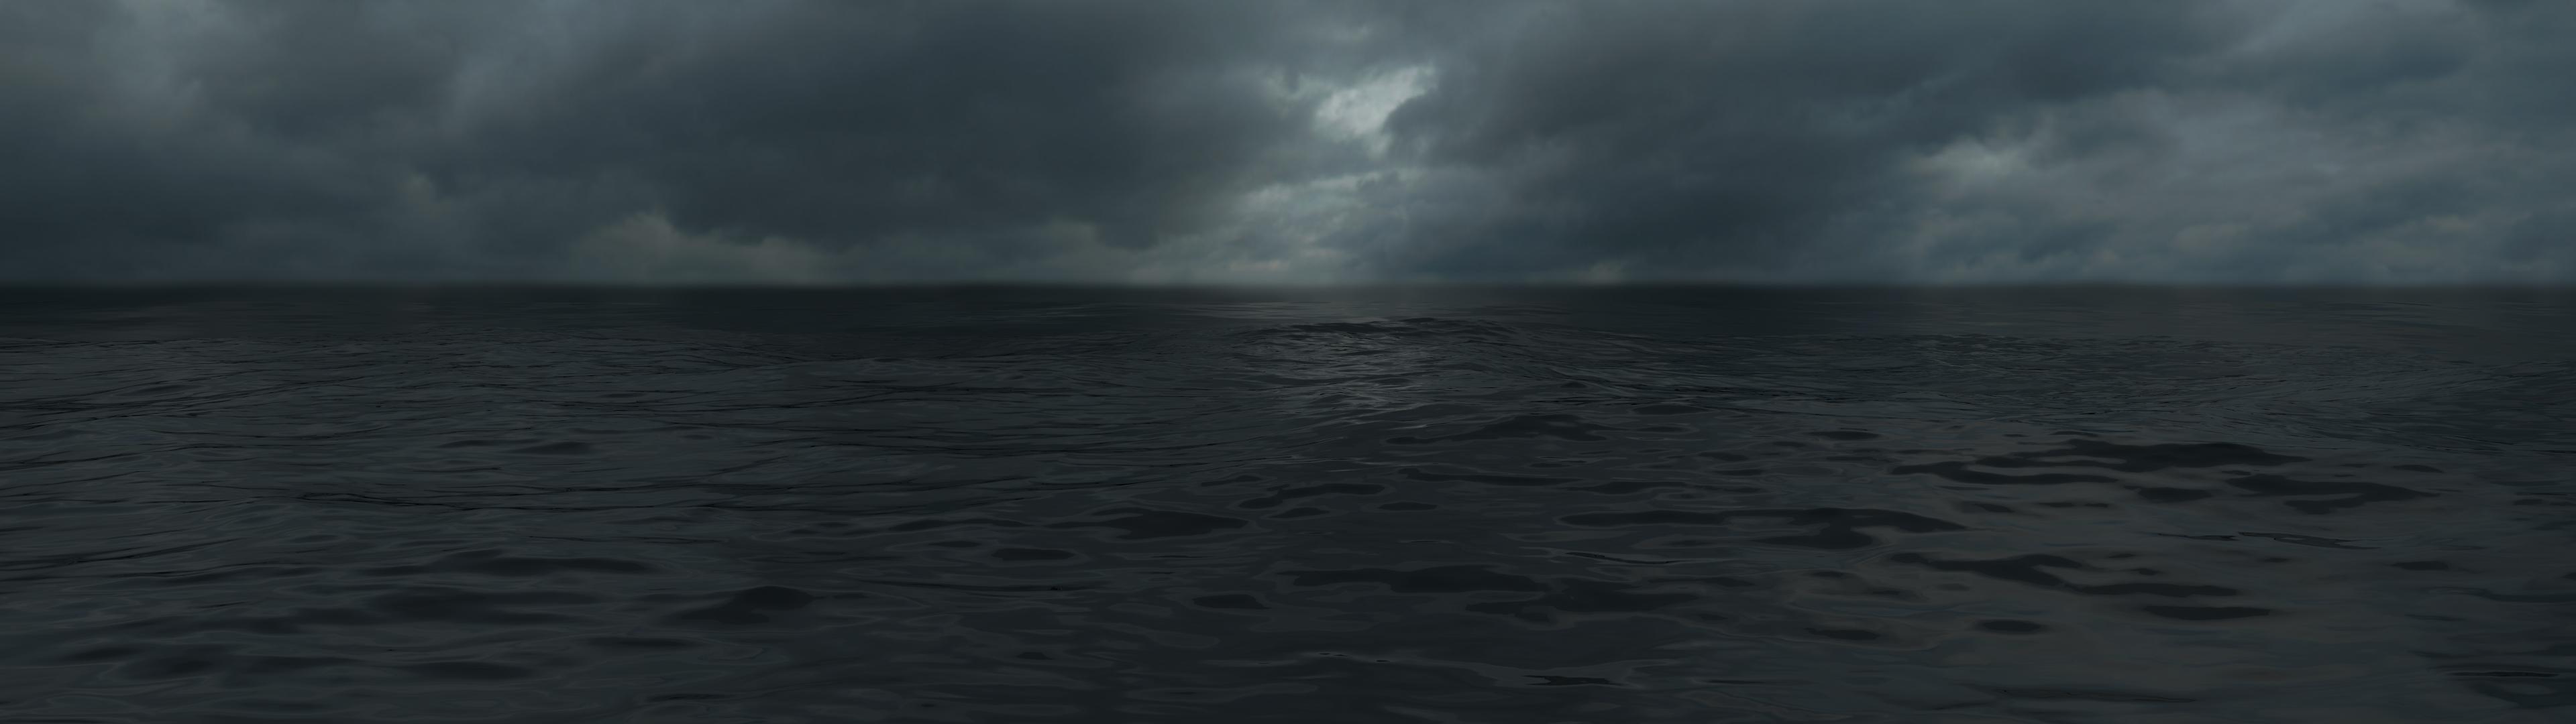 Dark Clouds Over Ocean - HD Wallpaper 